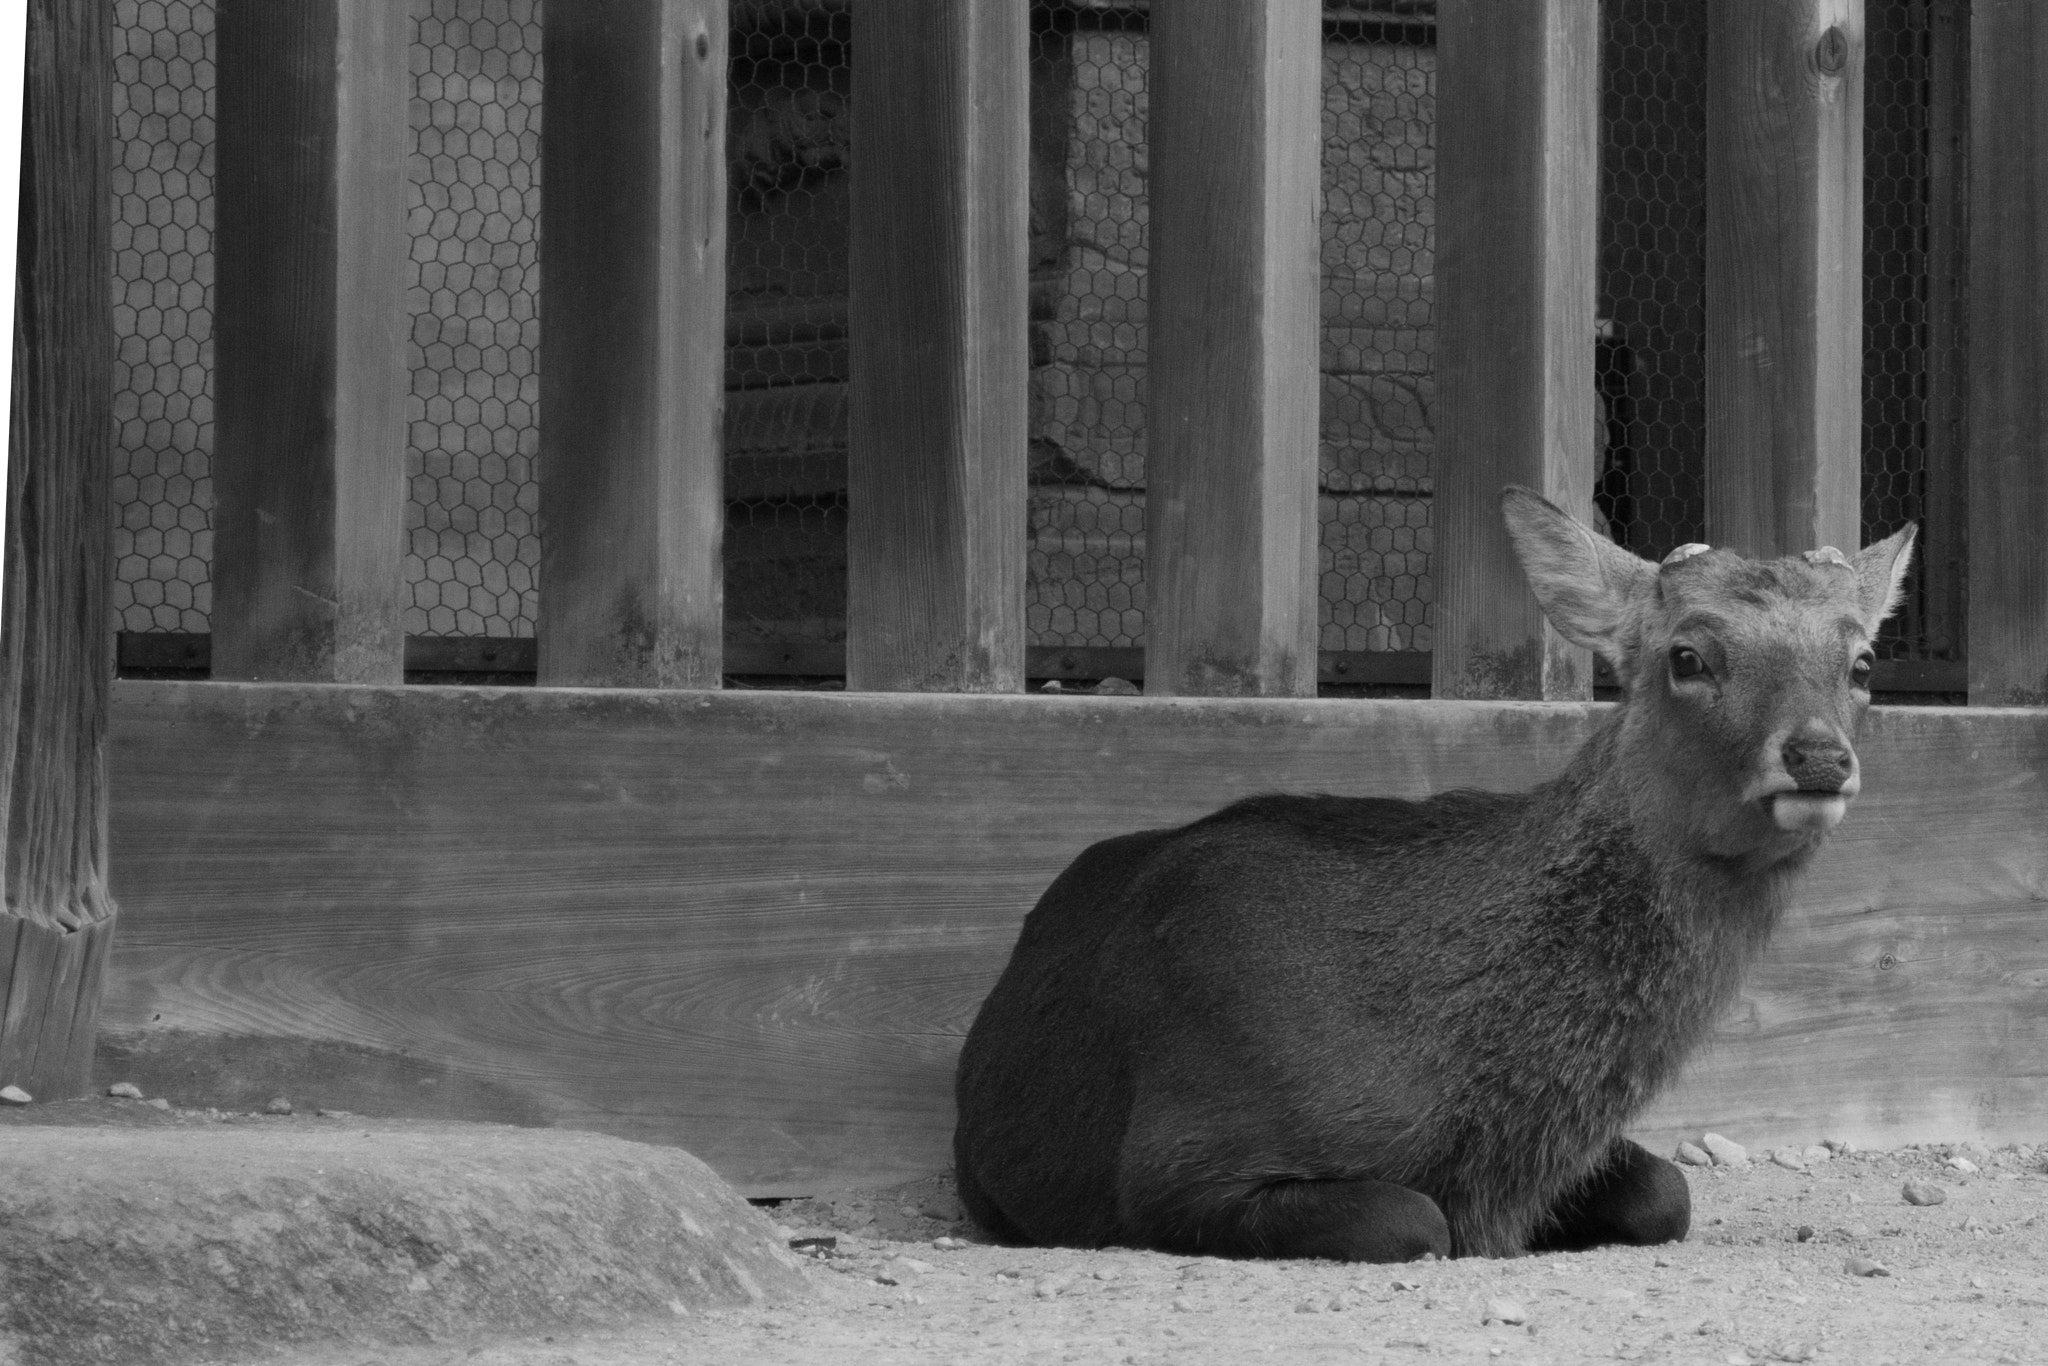 Nikon D7200 sample photo. Deer at nara deer park, japan photography